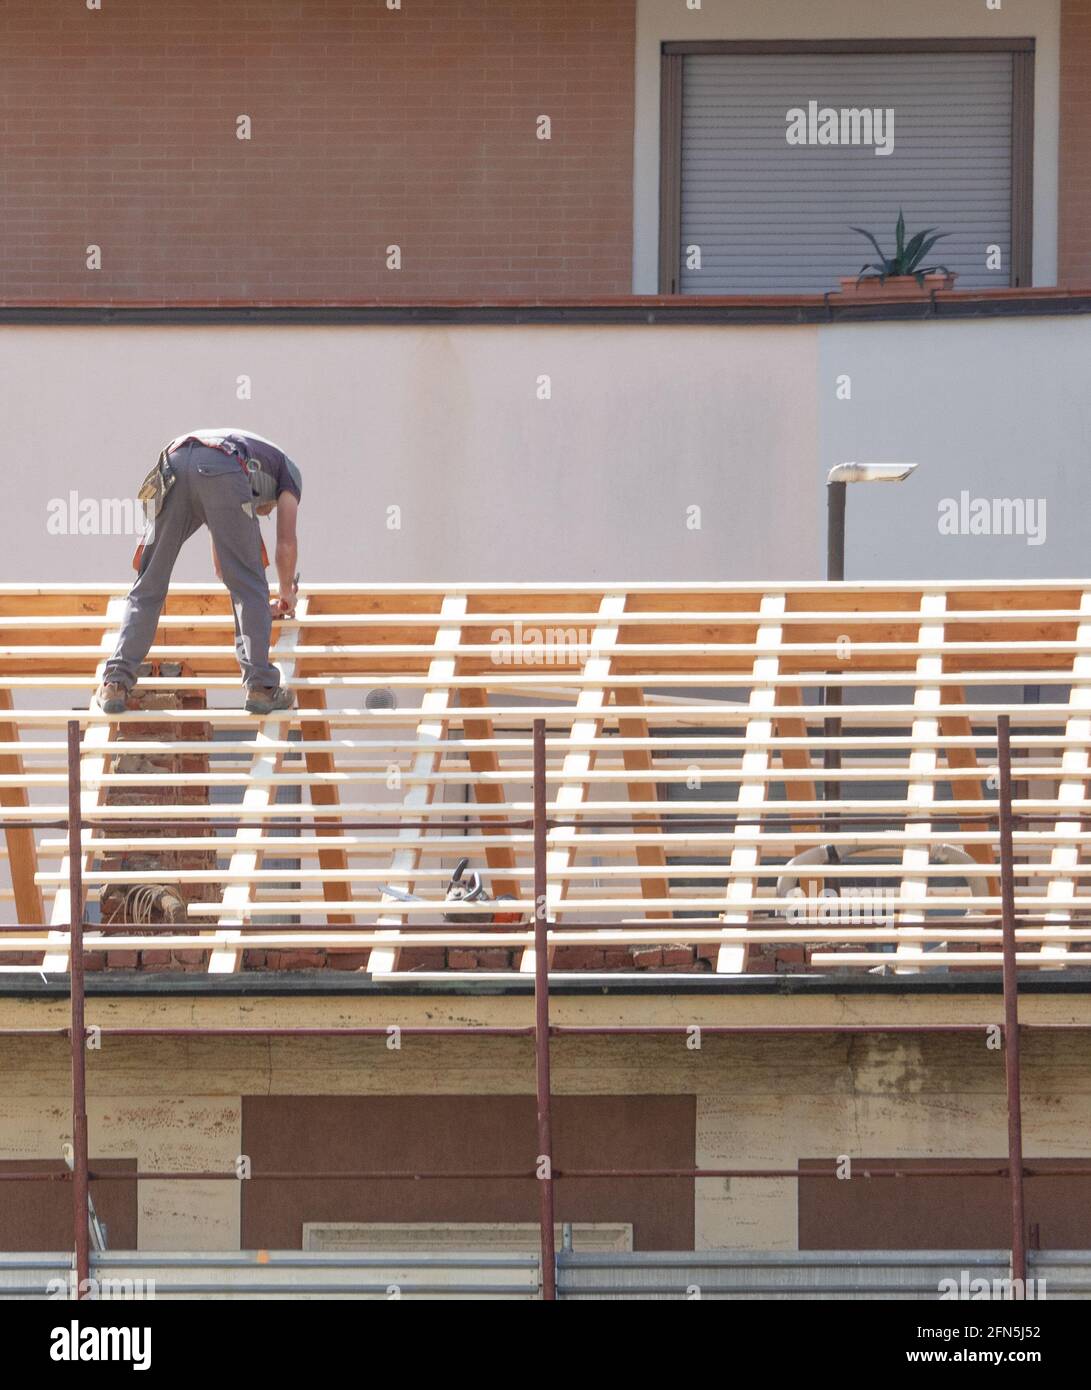 Ein neues Dach auf einem alten Gebäude zu errichten, das von steuerlichen Anreizen oder Ökosystemen für Renovierungen profitiert. Stockfoto